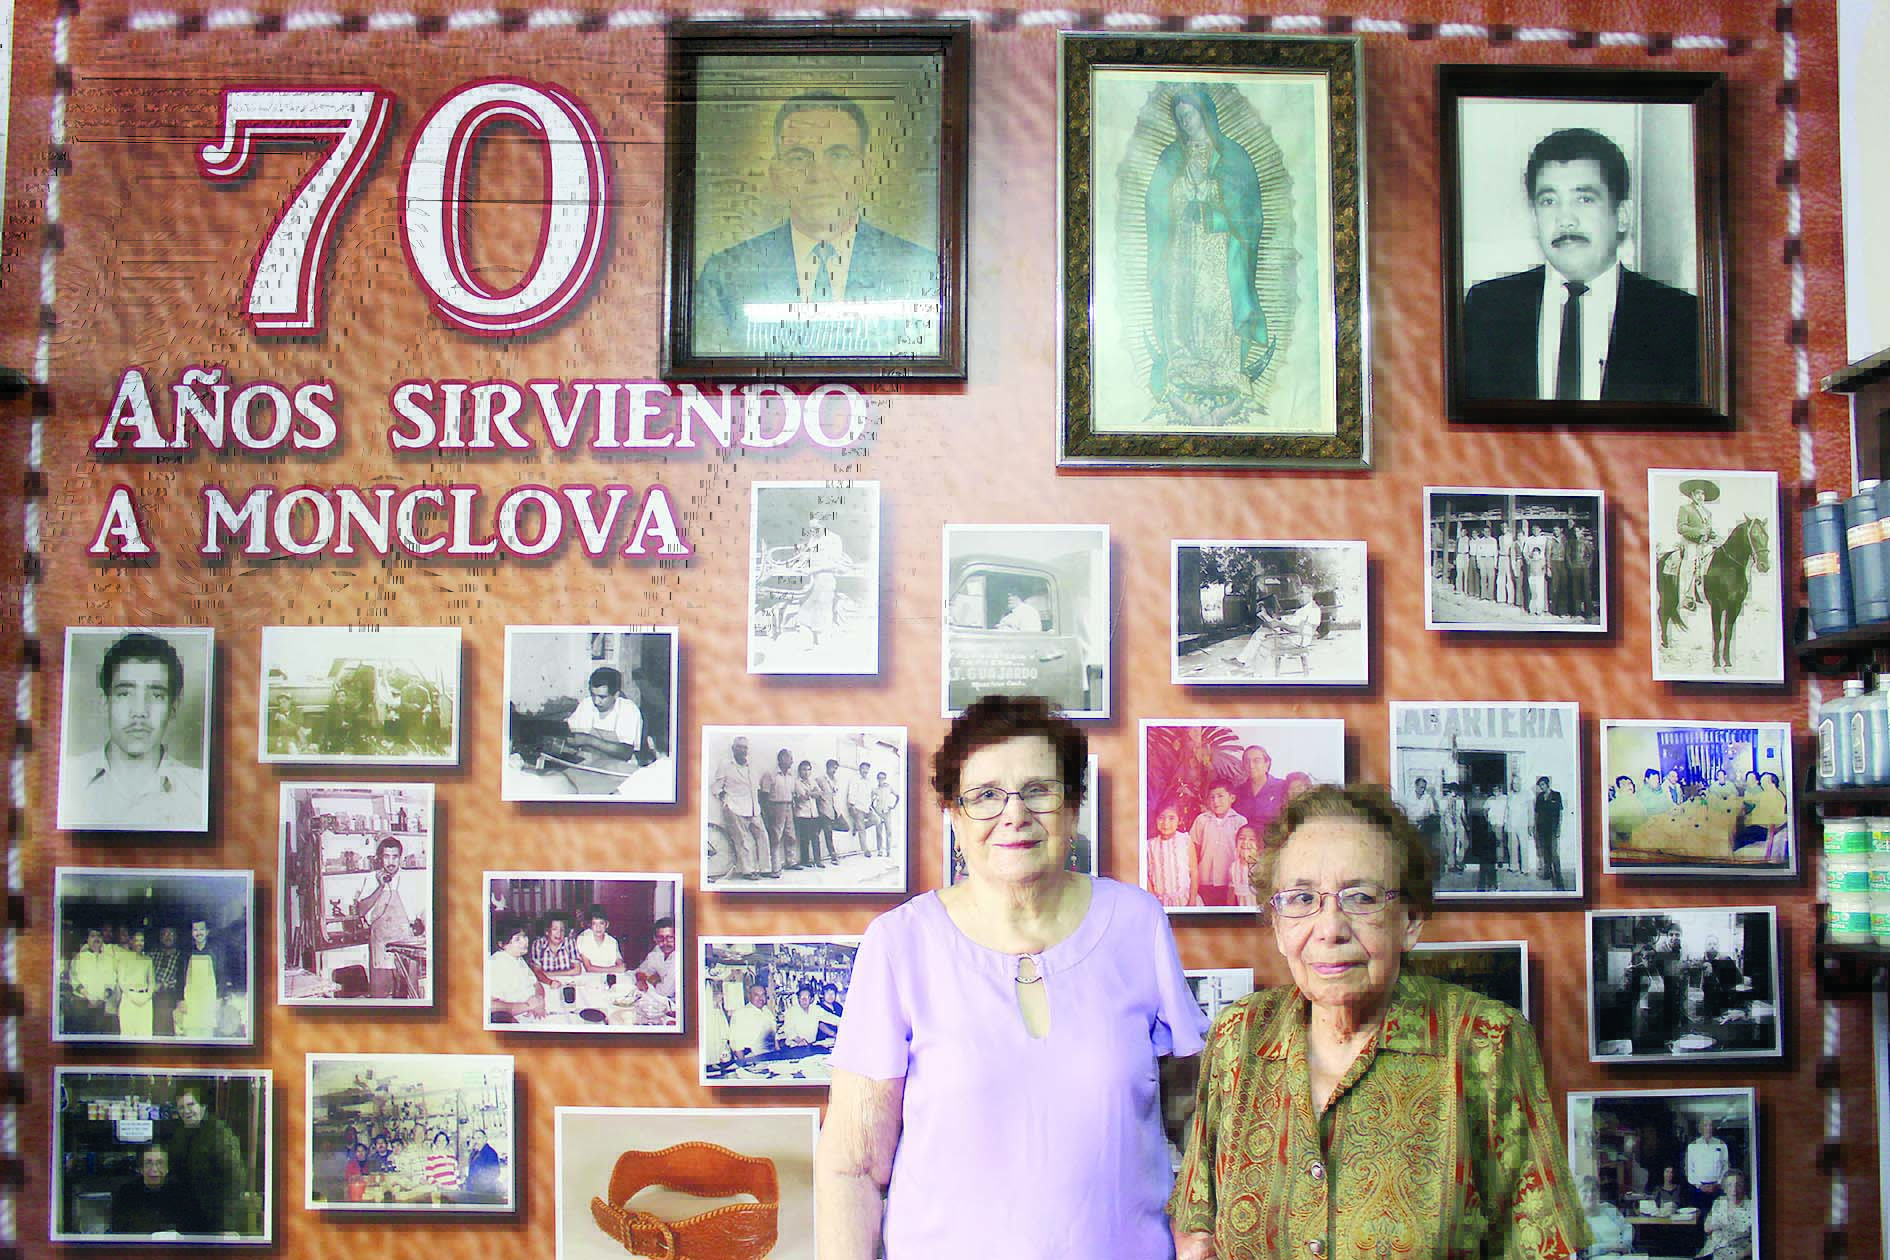 Talabartería Guajardo, 70 años de tradición en Monclova